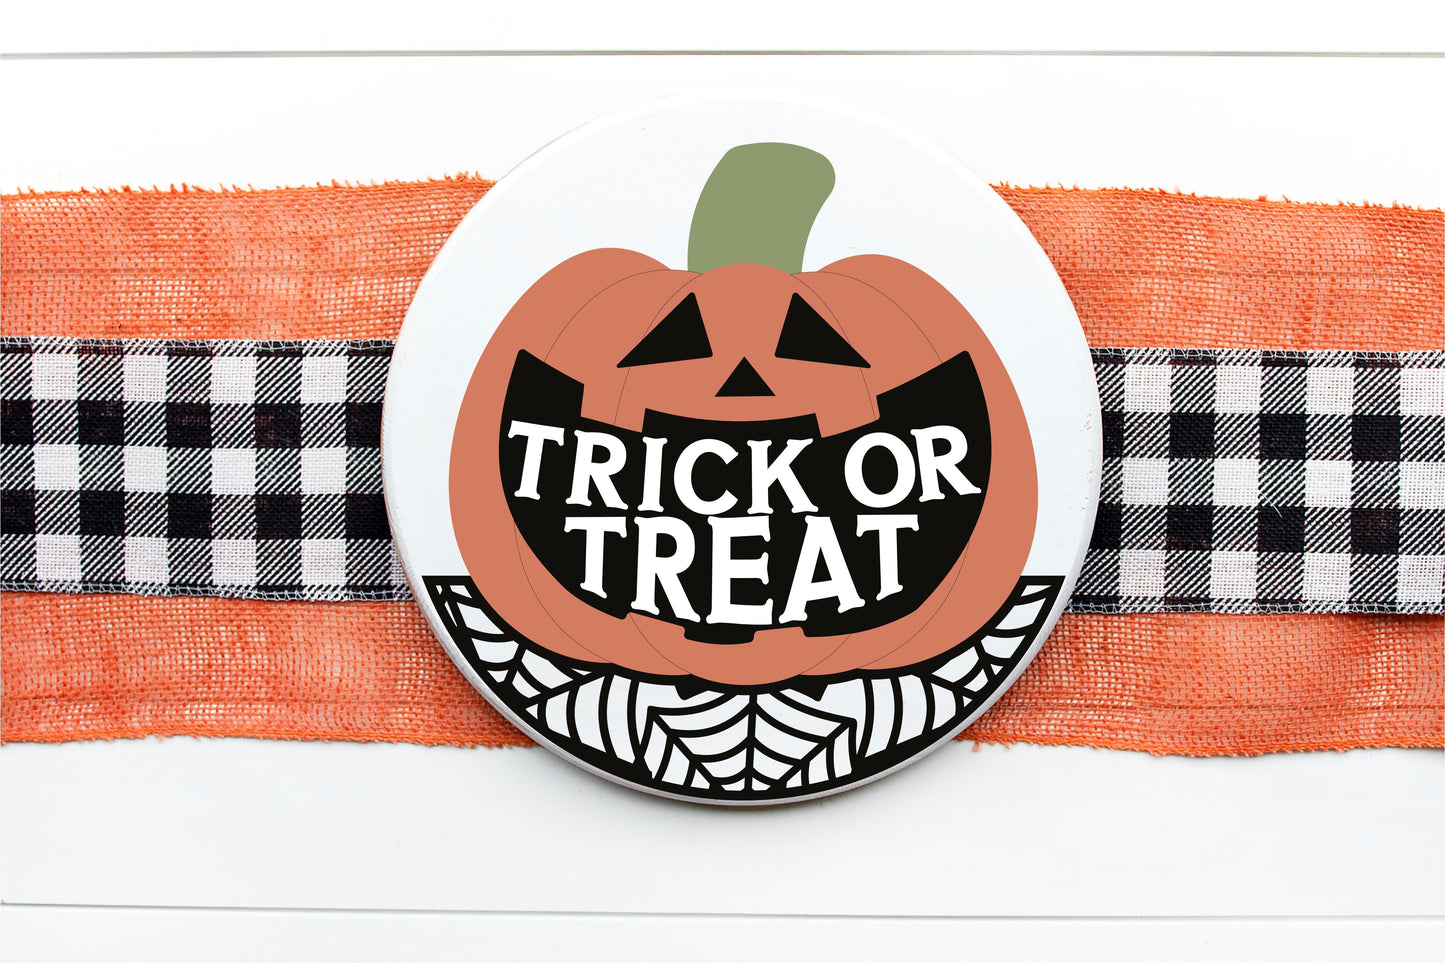 Trick or treat Halloween door sign